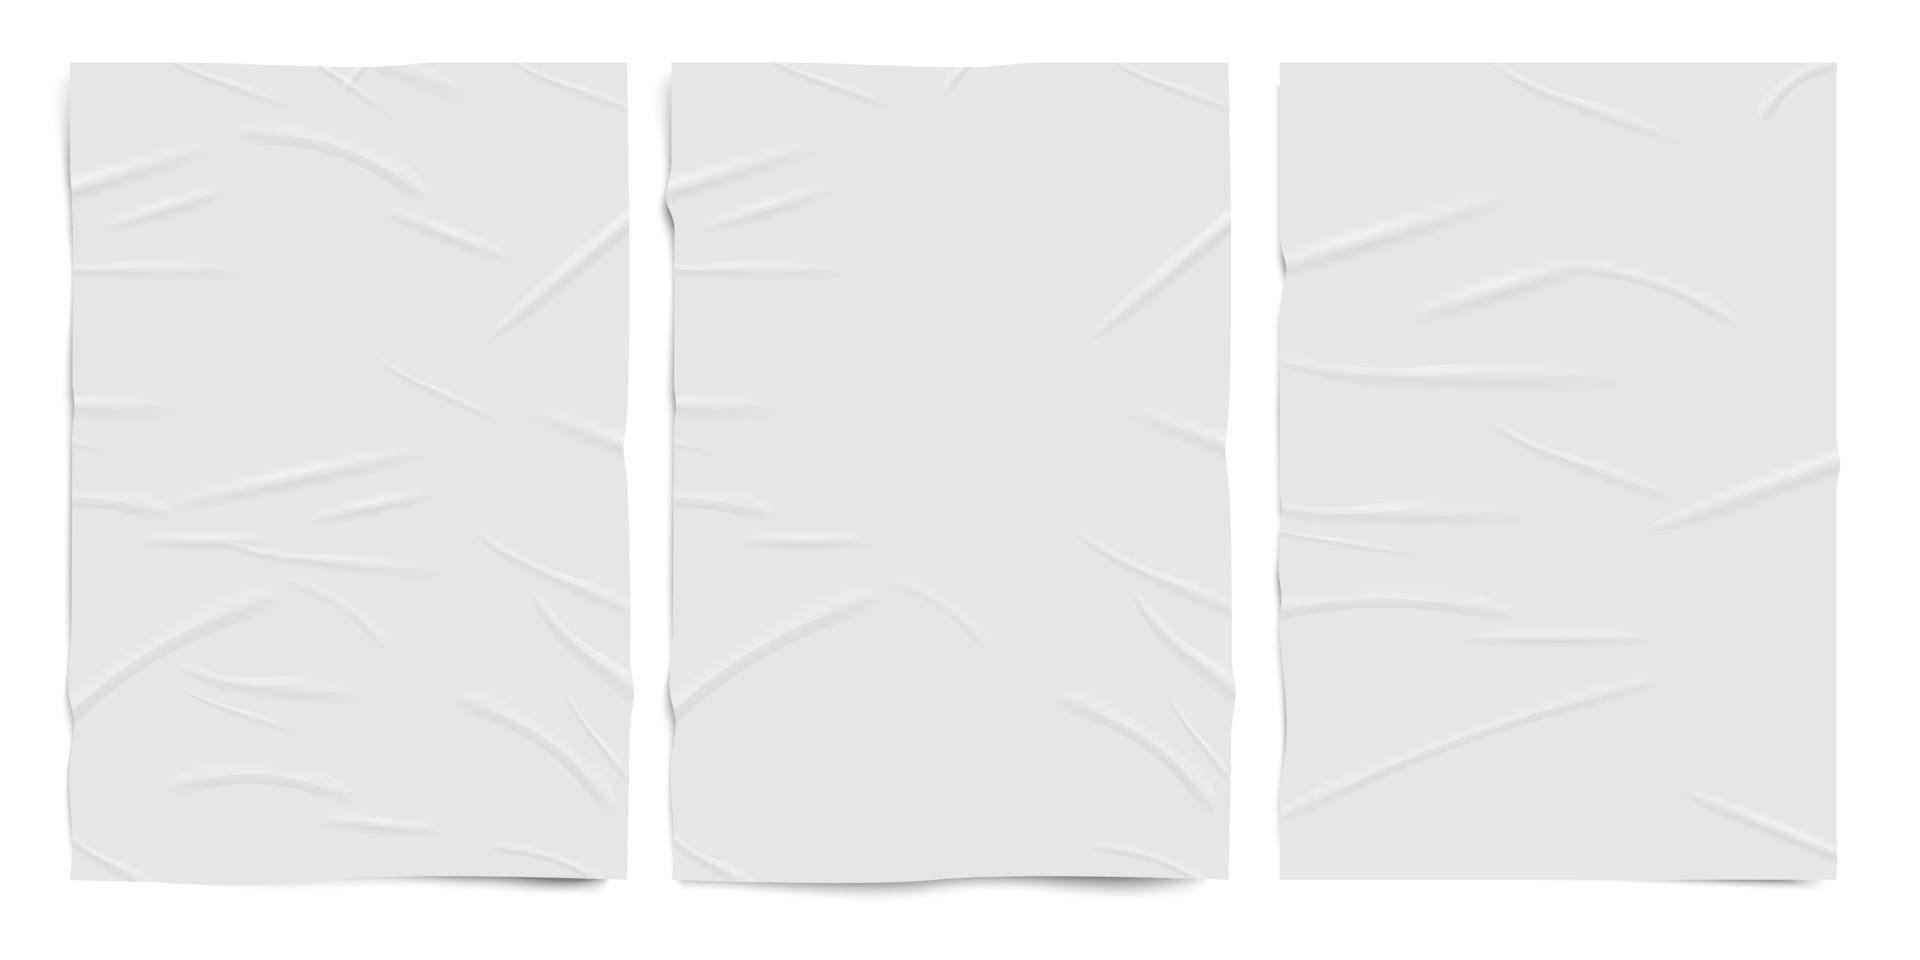 Textura de papel blanco mal pegado, hojas de papel con efecto arrugado húmedo, conjunto realista de vectores